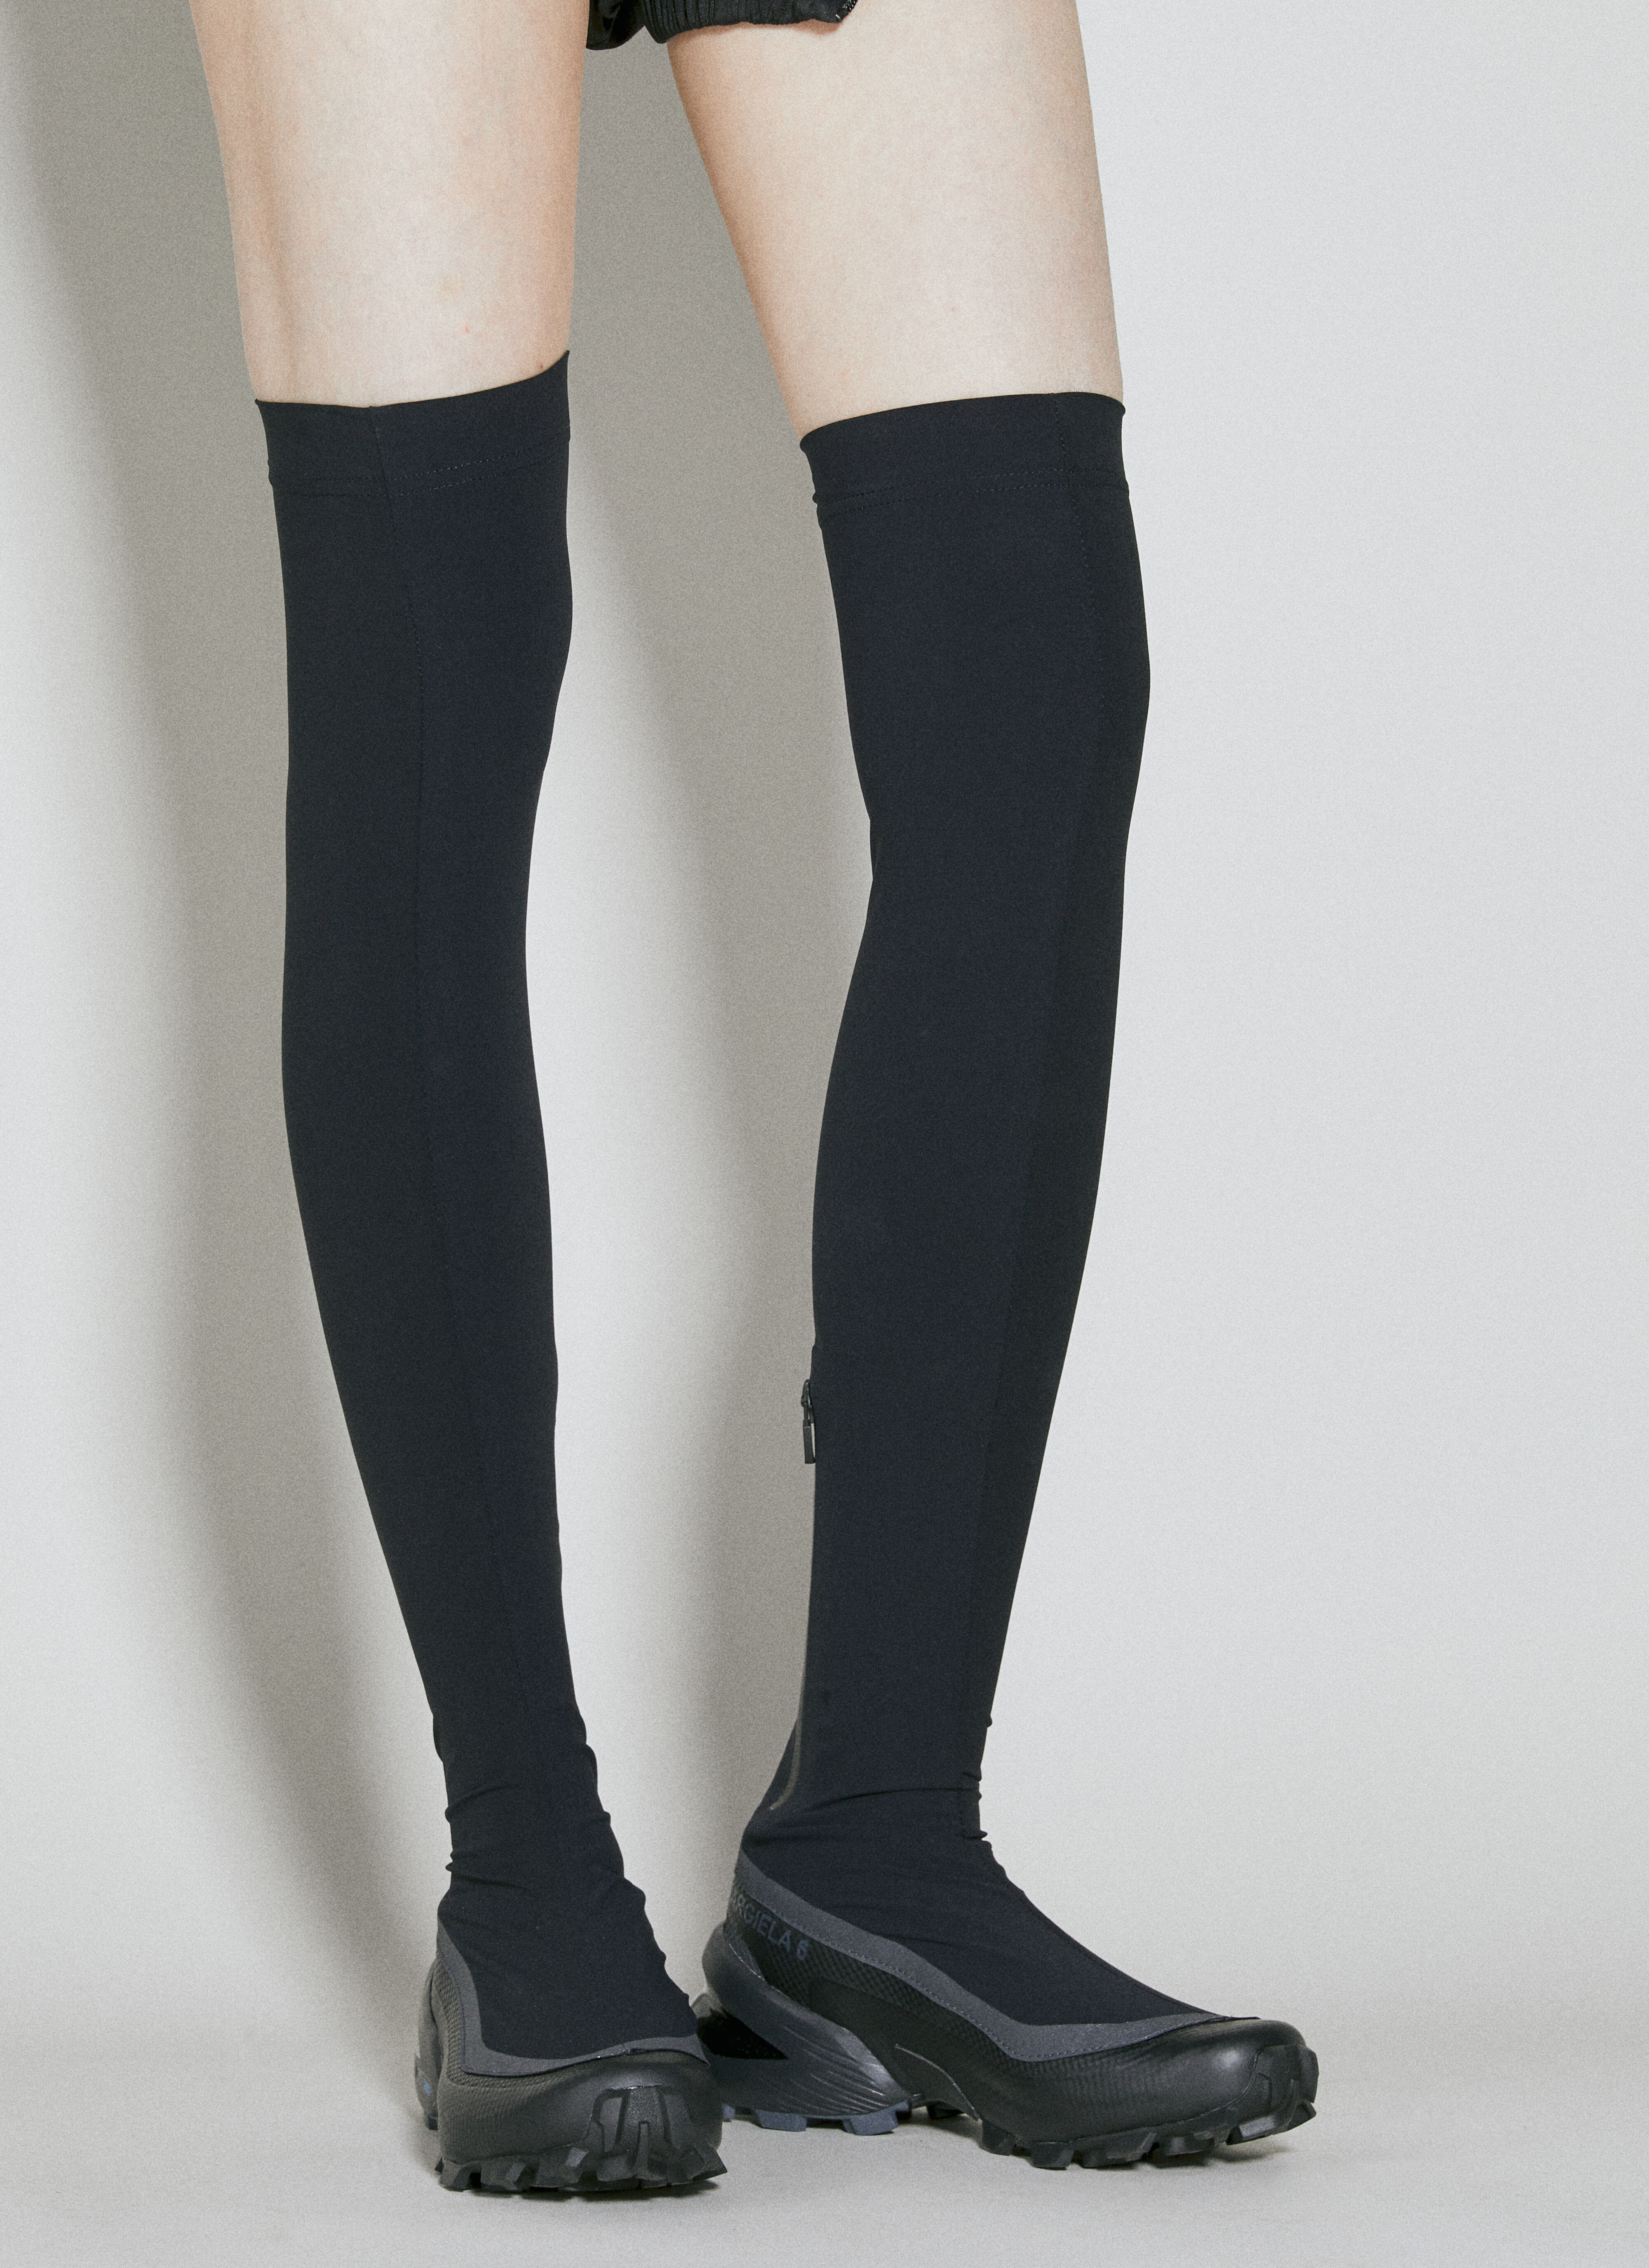 MM6 Maison Margiela x Salomon Thigh High Boots in Black | LN-CC®